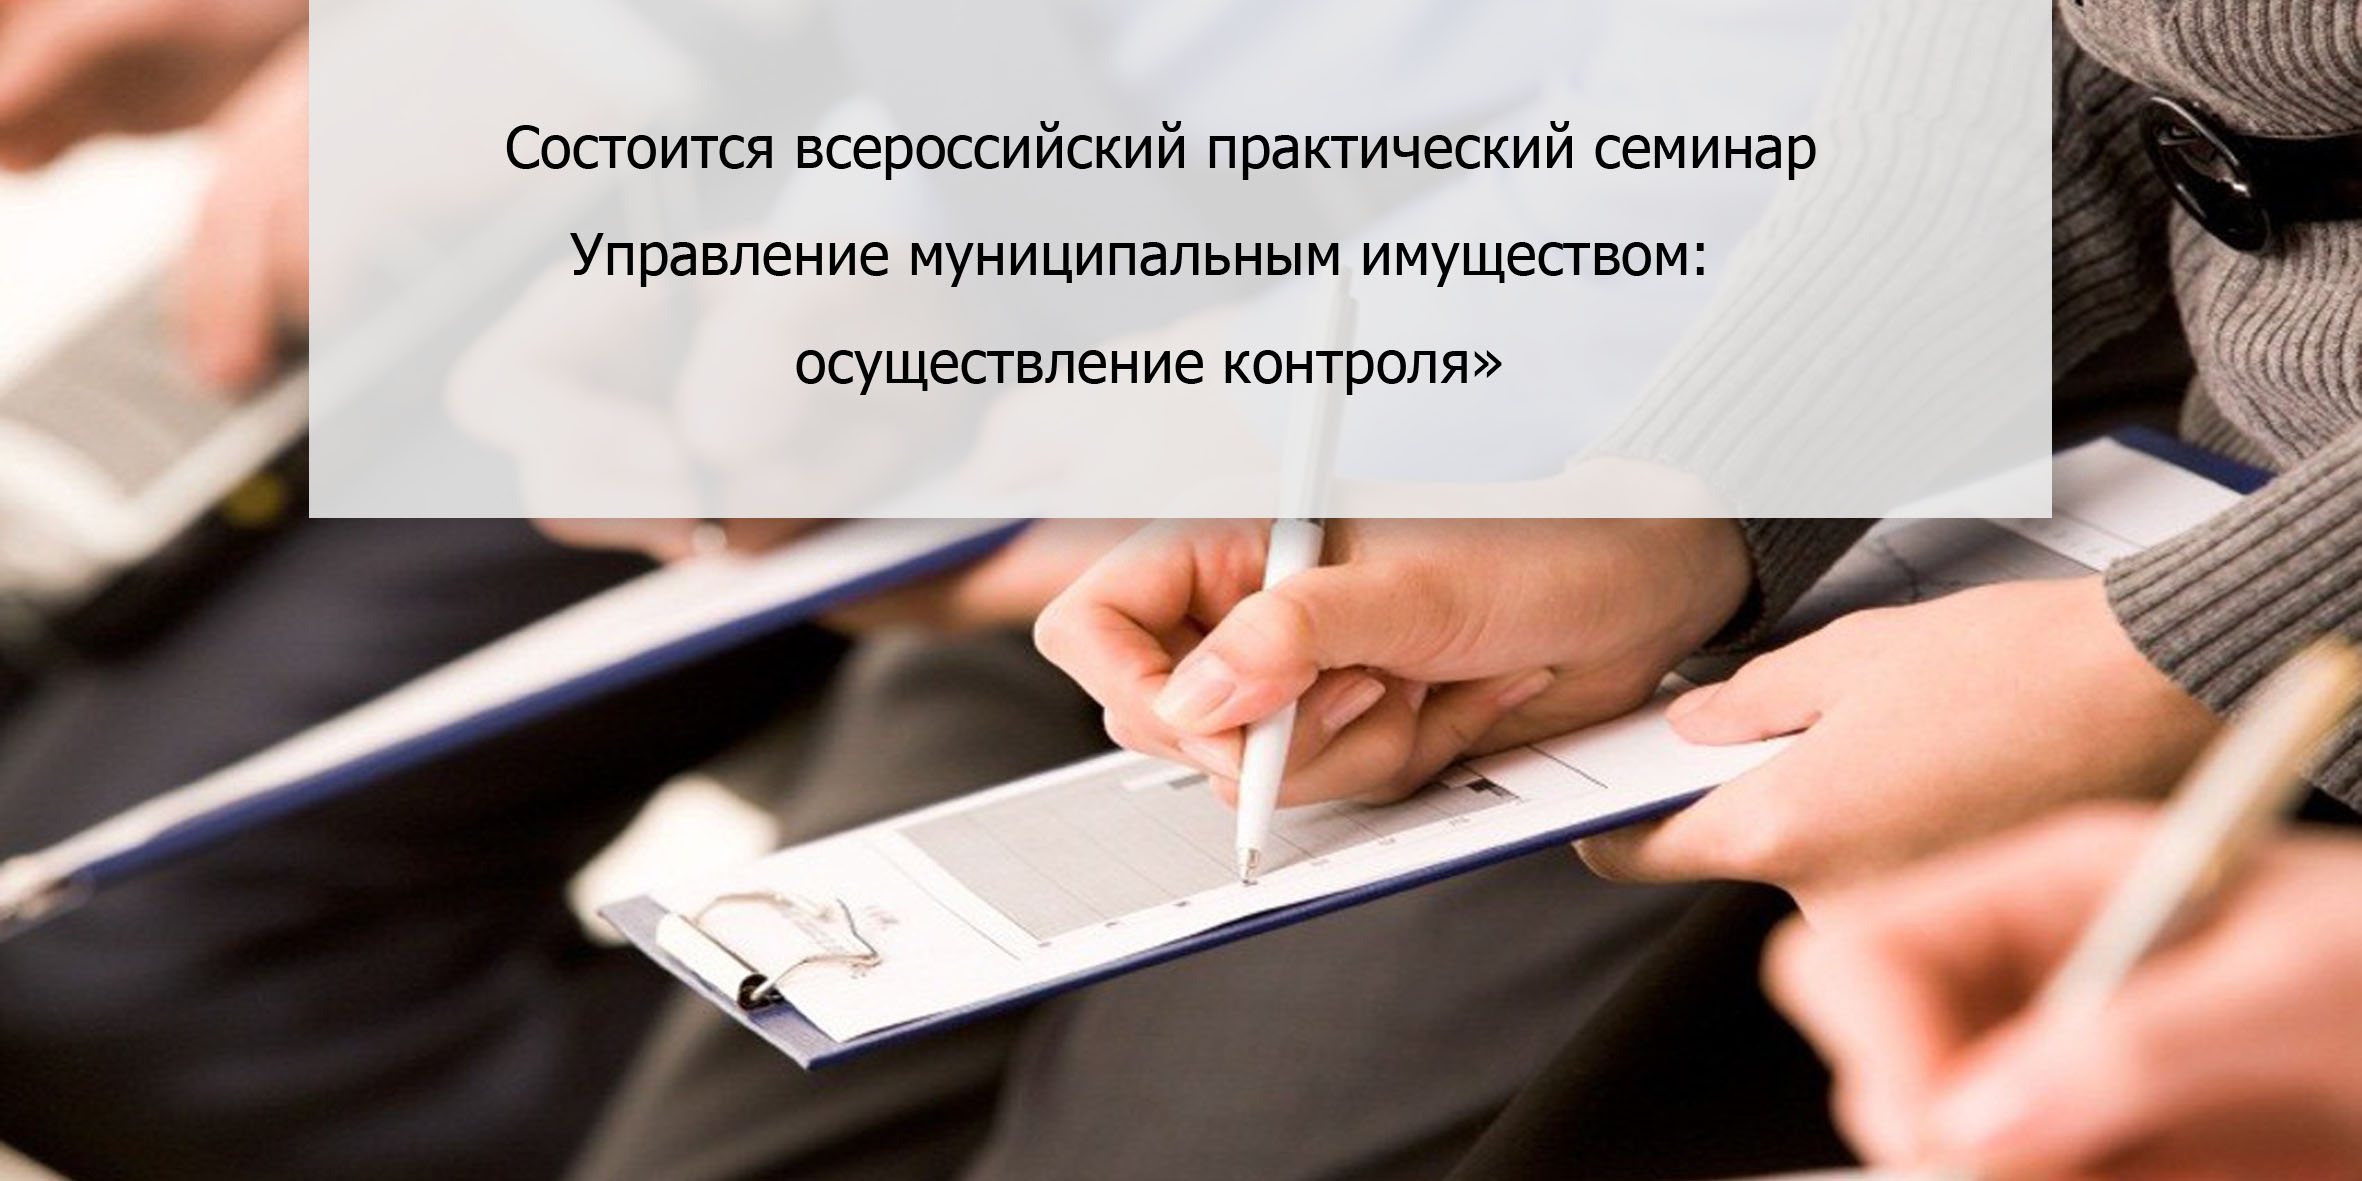 Состоится всероссийский практический семинар  «Управление муниципальным имуществом: осуществление контроля»